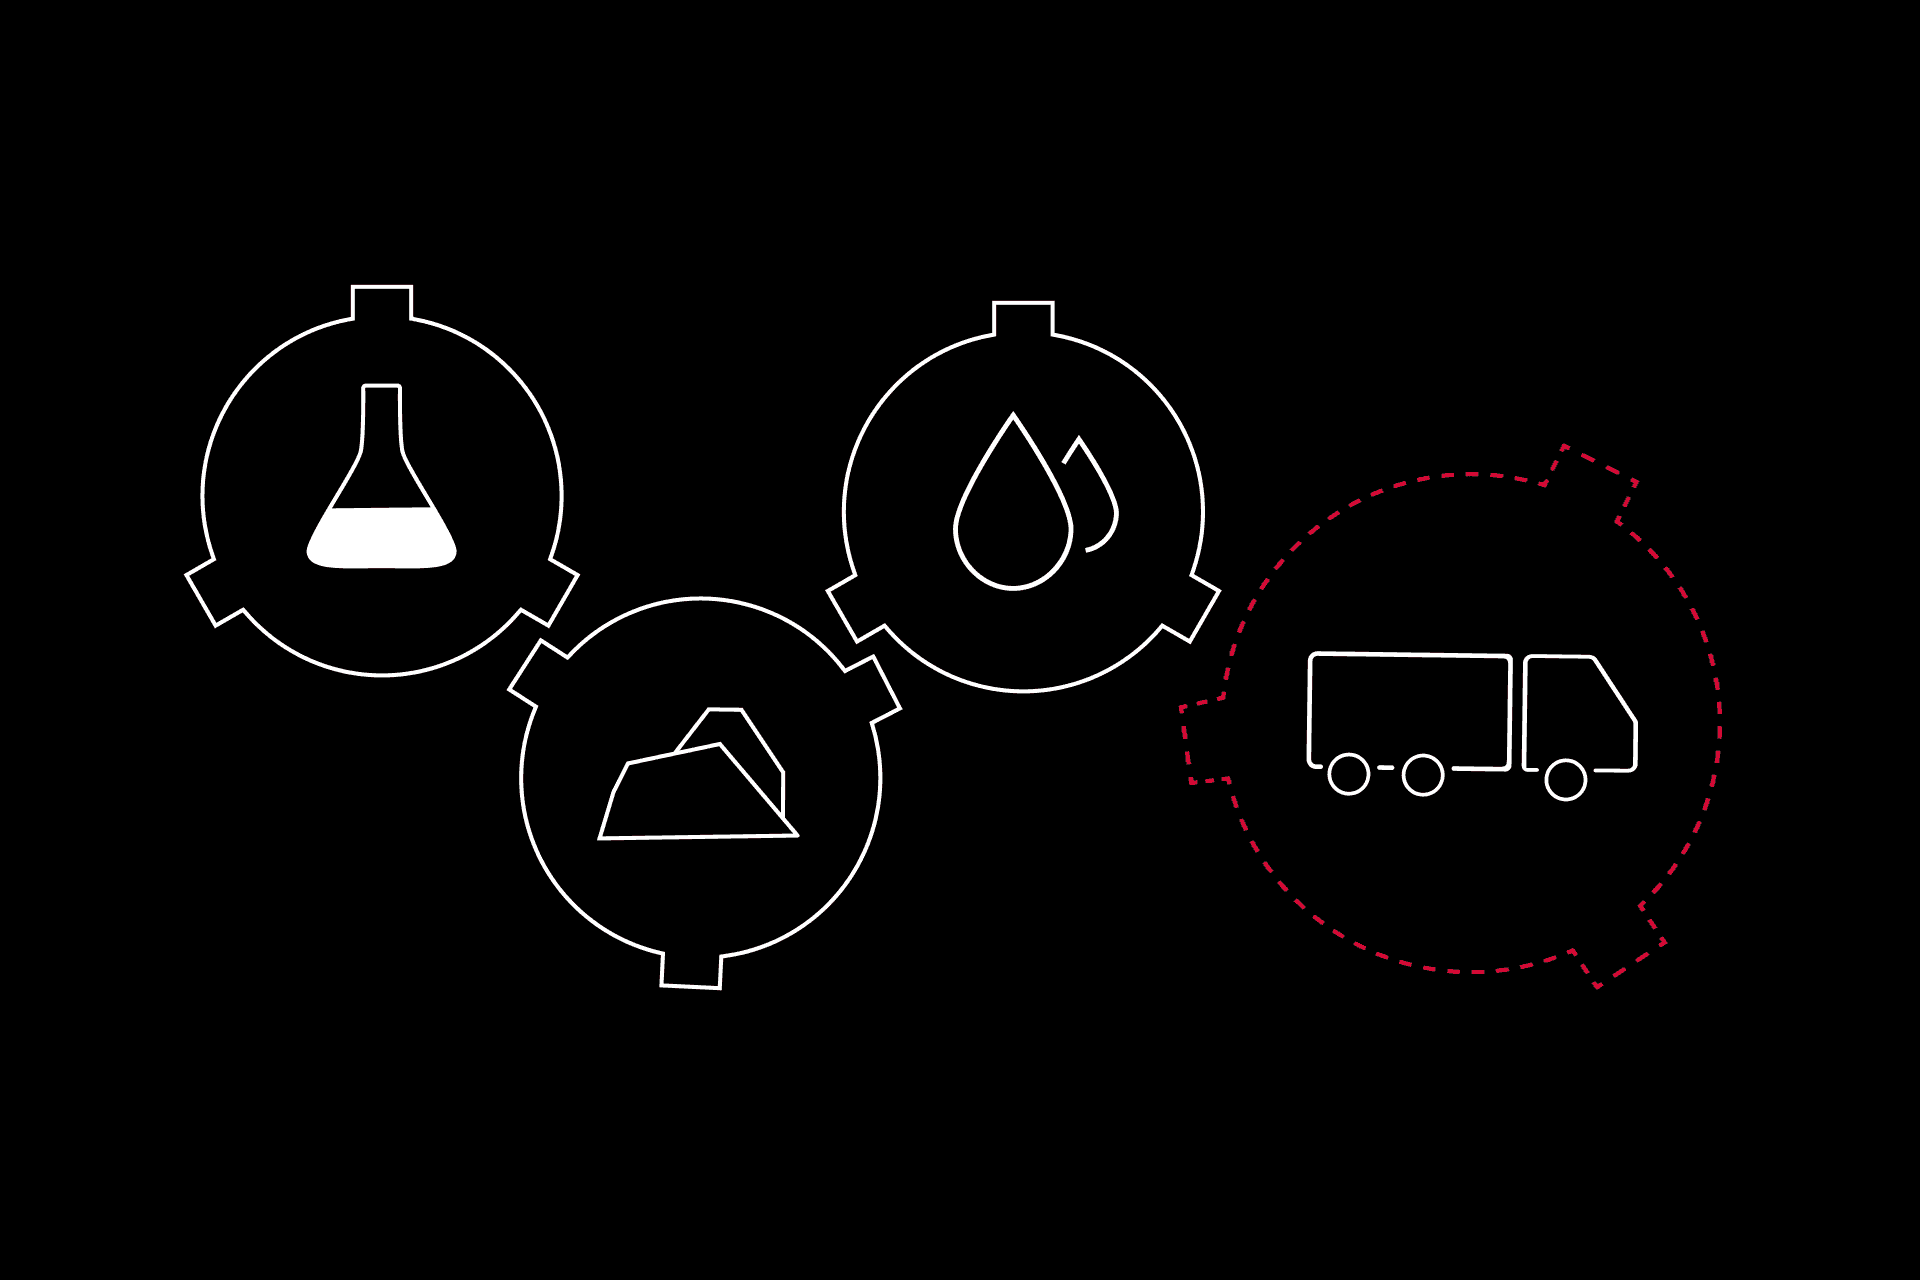 La chaîne d'approvisionnement est mise en scène graphiquement avec des symboles représentant des matières premières et un camion.